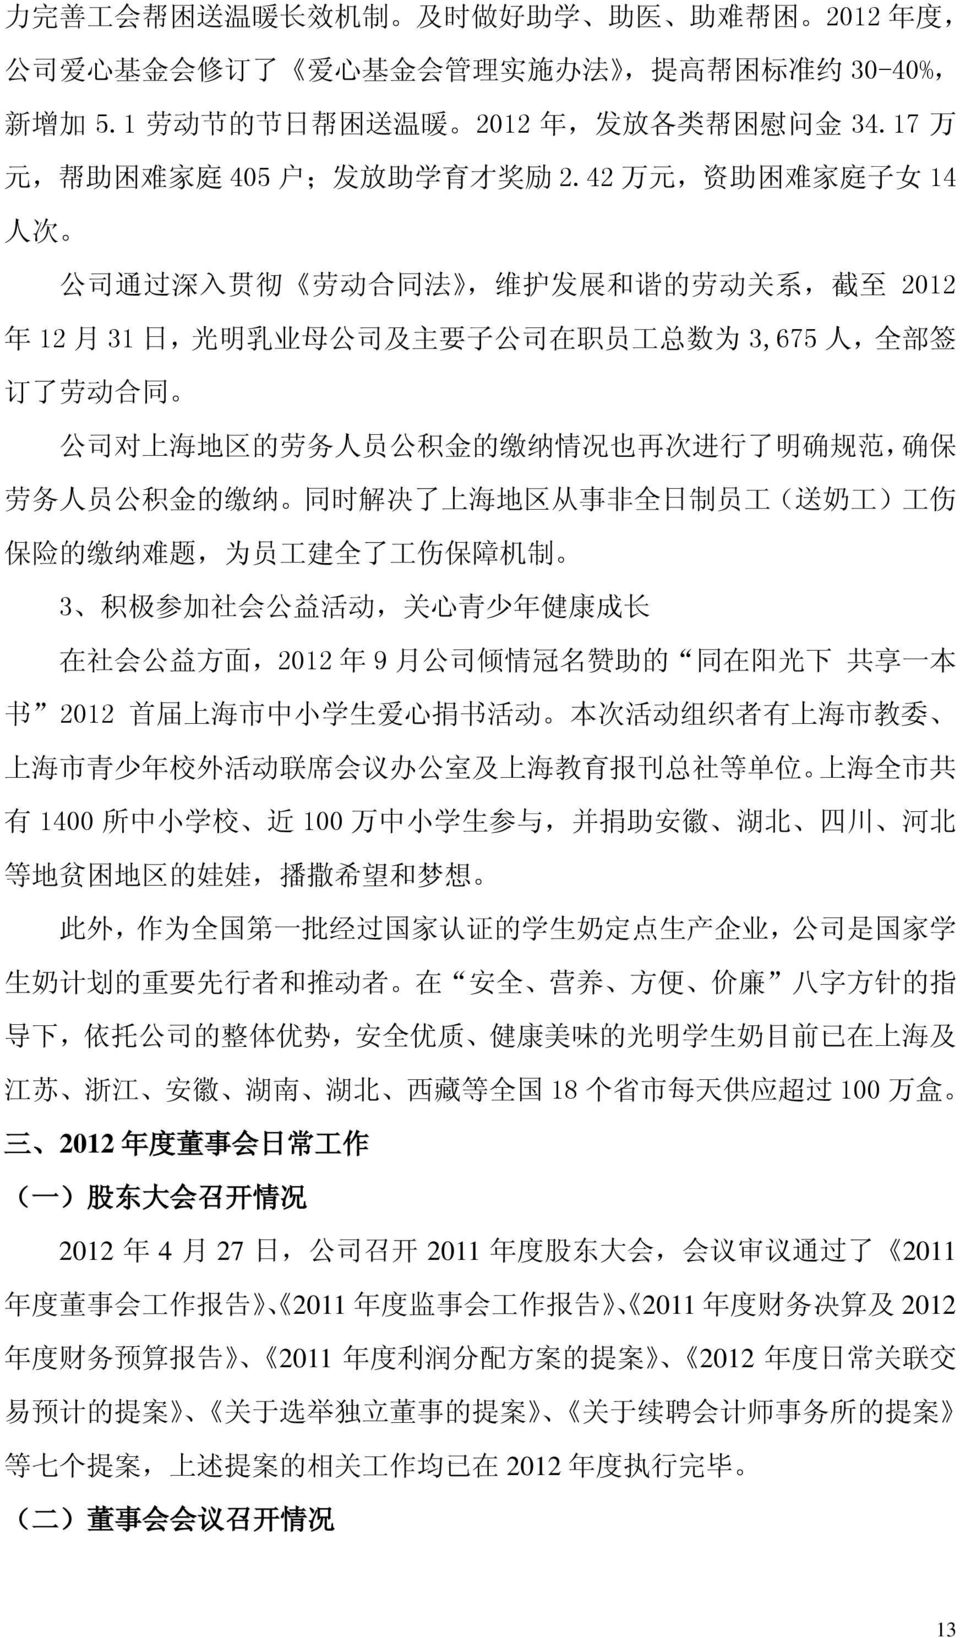 42 万 元, 资 助 困 难 家 庭 子 女 14 人 次 公 司 通 过 深 入 贯 彻 劳 动 合 同 法, 维 护 发 展 和 谐 的 劳 动 关 系, 截 至 2012 年 12 月 31 日, 光 明 乳 业 母 公 司 及 主 要 子 公 司 在 职 员 工 总 数 为 3,675 人, 全 部 签 订 了 劳 动 合 同 公 司 对 上 海 地 区 的 劳 务 人 员 公 积 金